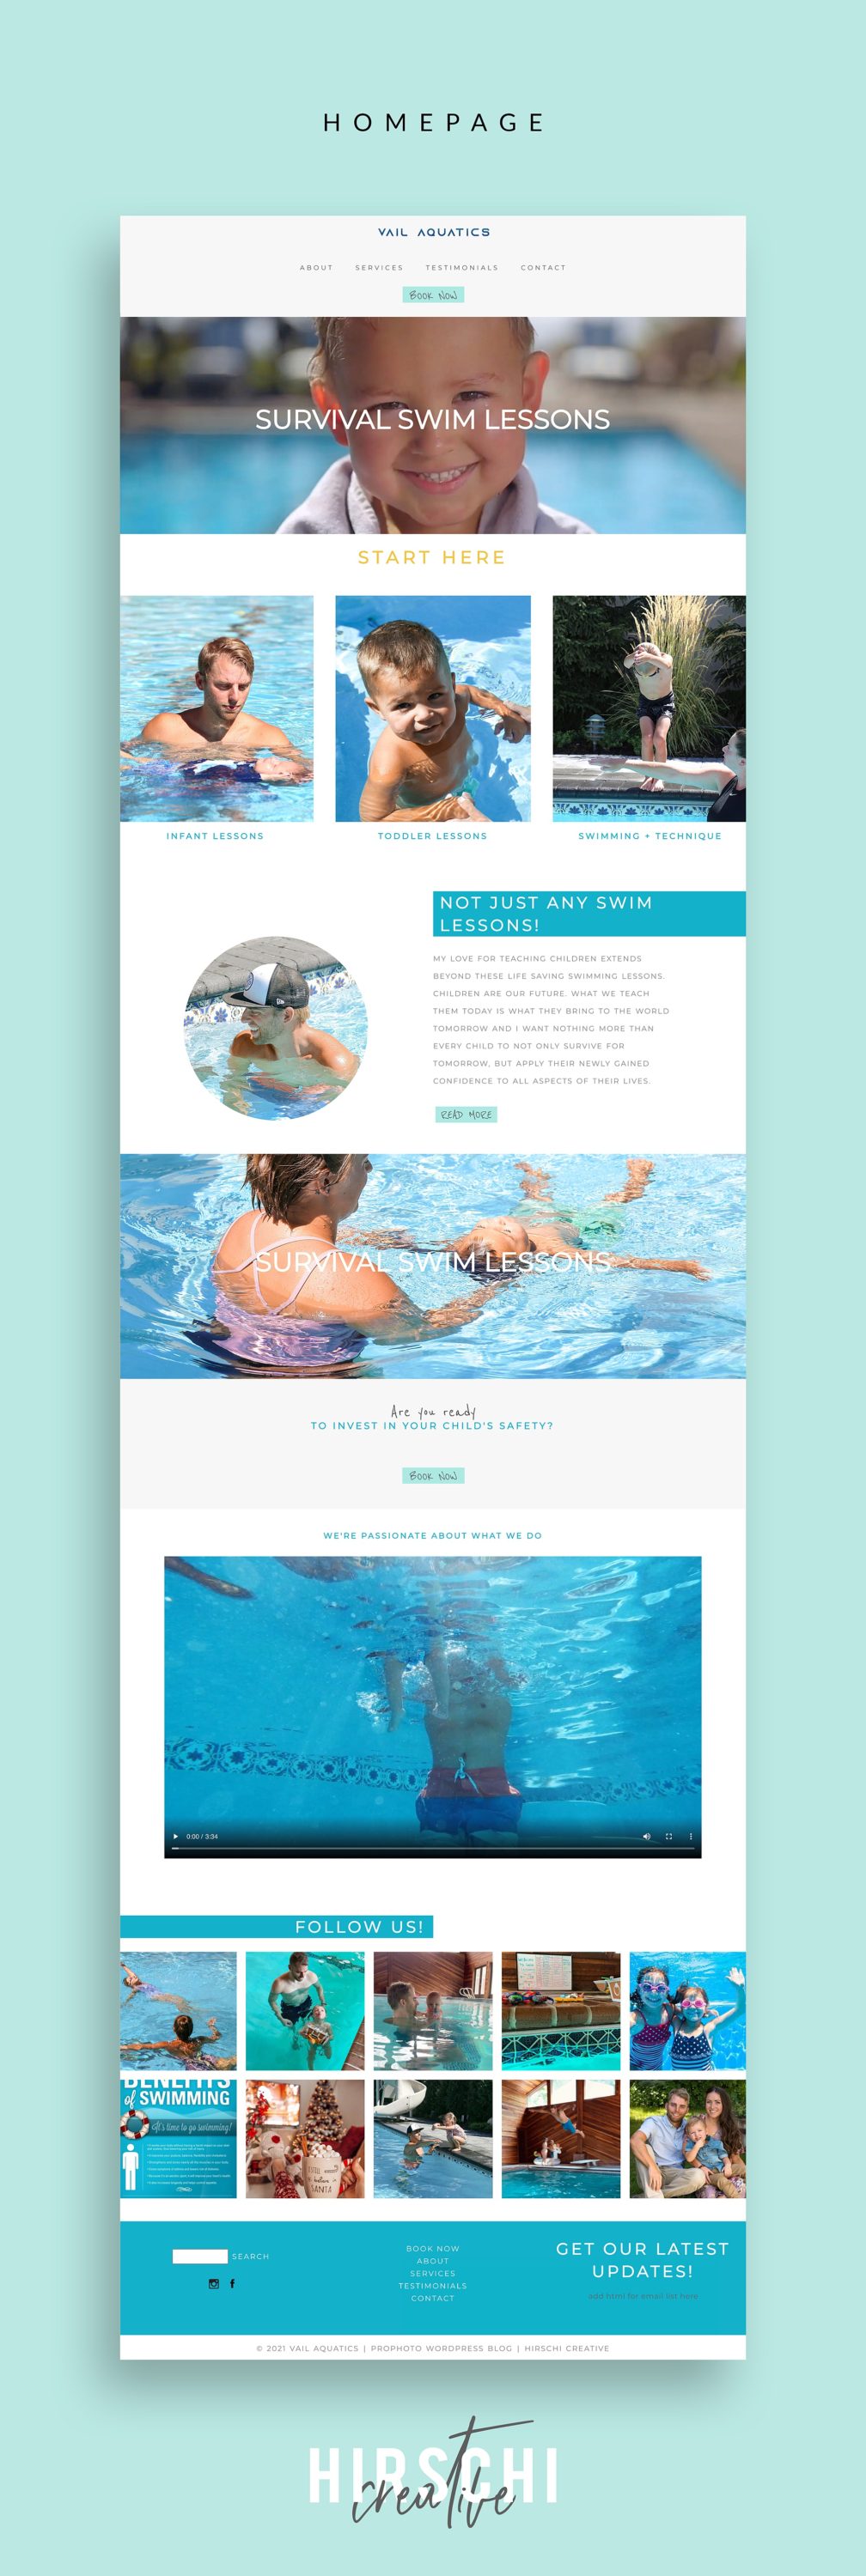 branding, social media branding, website design, utah survival swim lessons